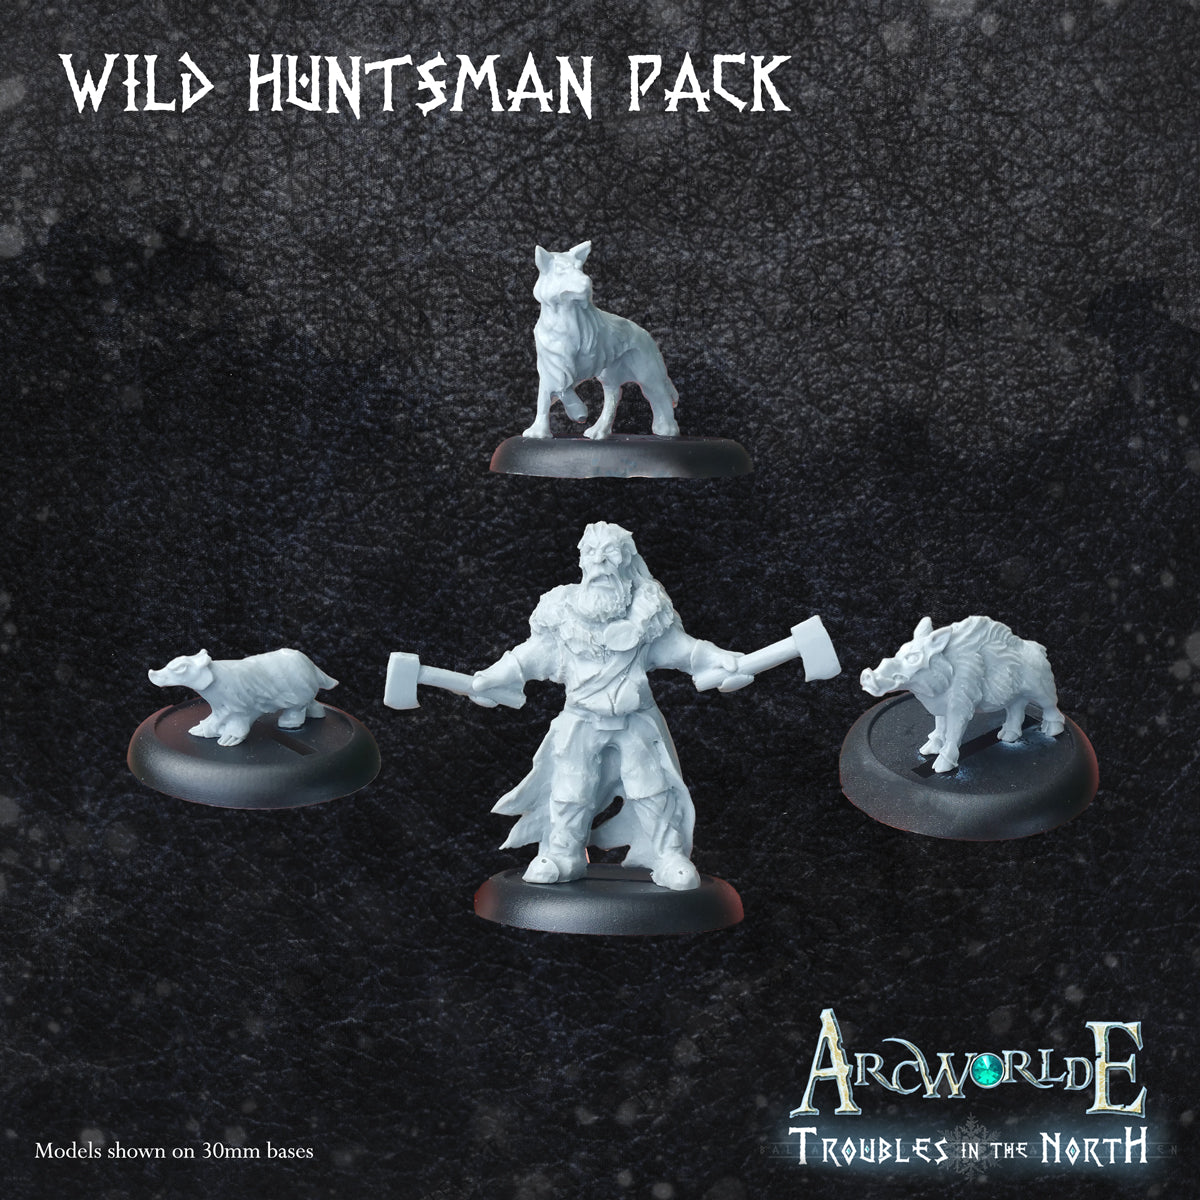 Wild Huntsman Pack